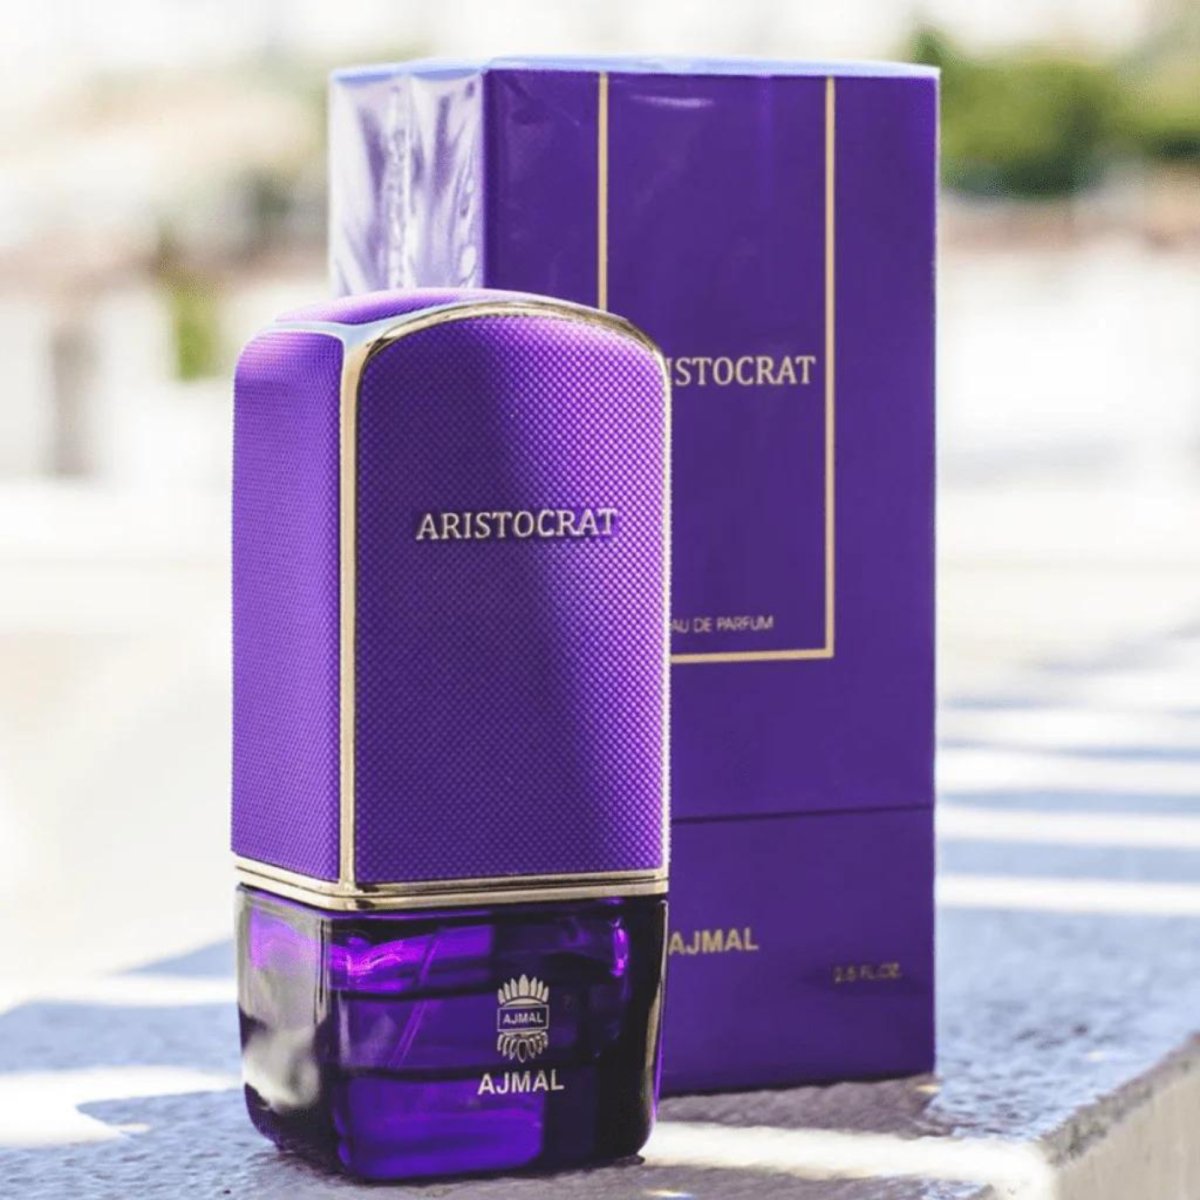 Ajmal Aristocrat 2.5 oz/75 ml Eau De Parfum Spray Women's - Perfume Headquarters - Ajmal - 2.5 oz - Eau de Parfum - Fragrance - 6293708011124 - Fragrance